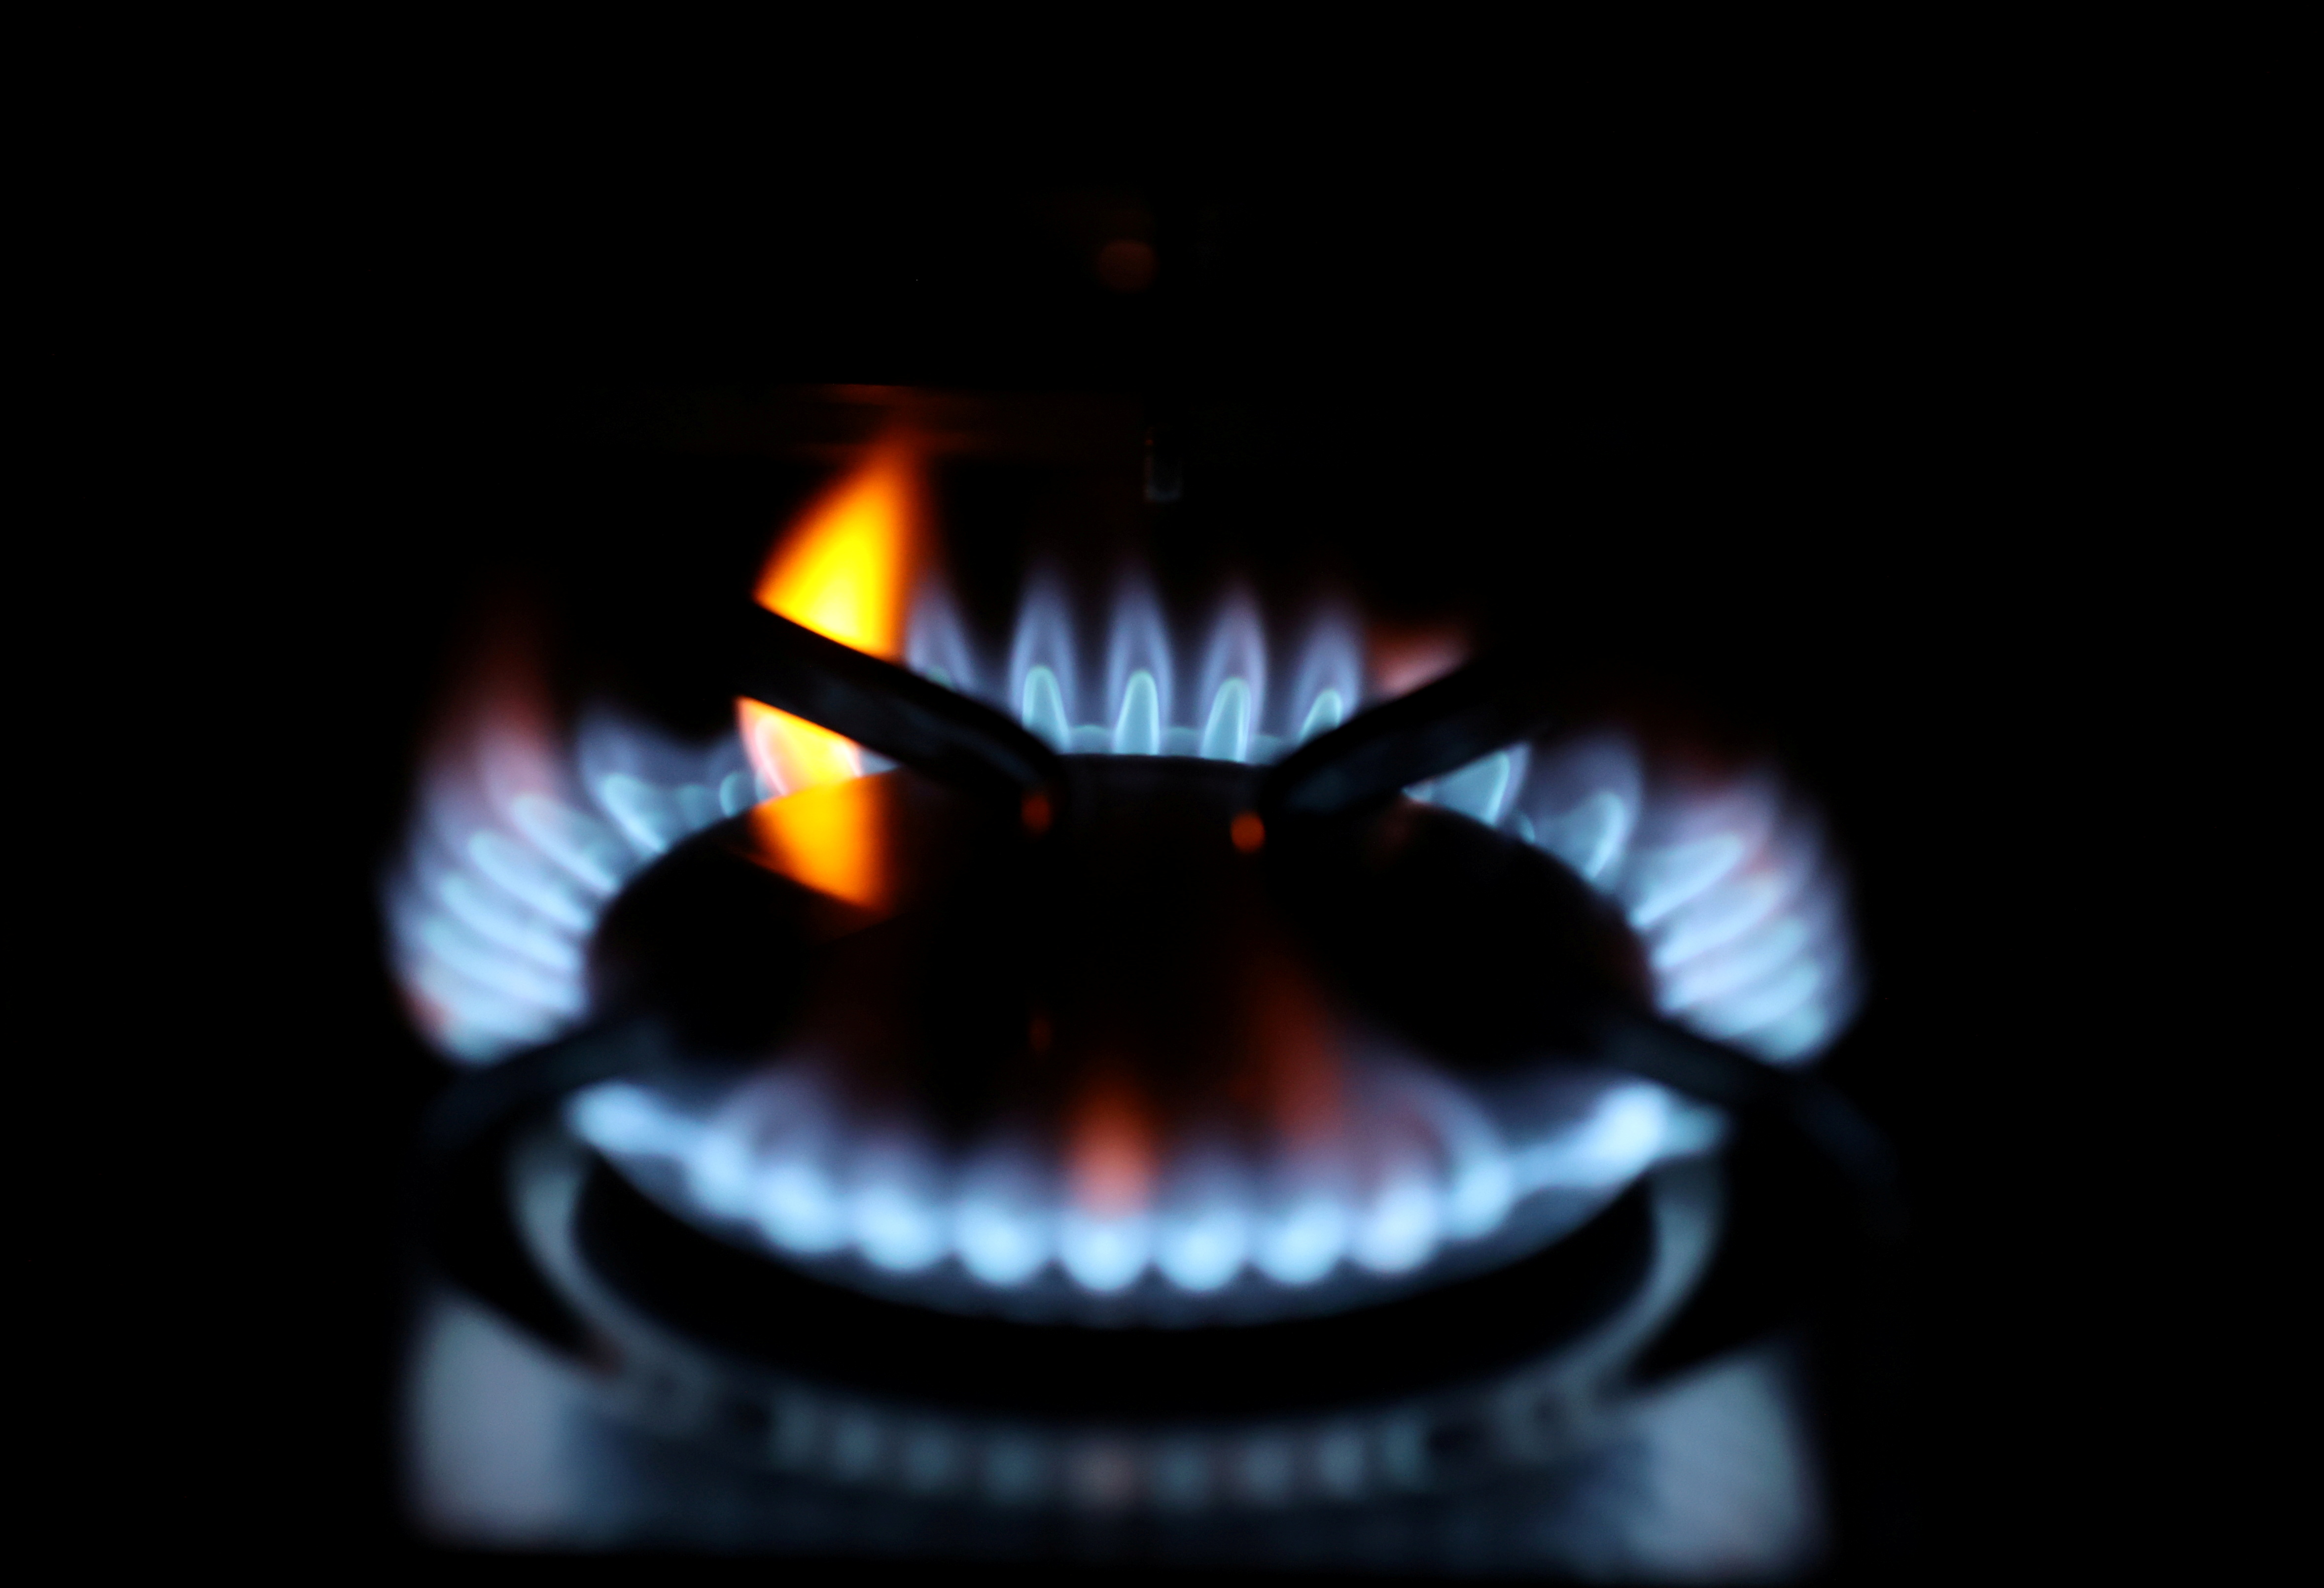 FOTO DE ARCHIVO: Las llamas salen de un anillo de gas doméstico de un horno en Durham, Gran Bretaña, el 23 de septiembre de 2021. REUTERS/Lee Smith